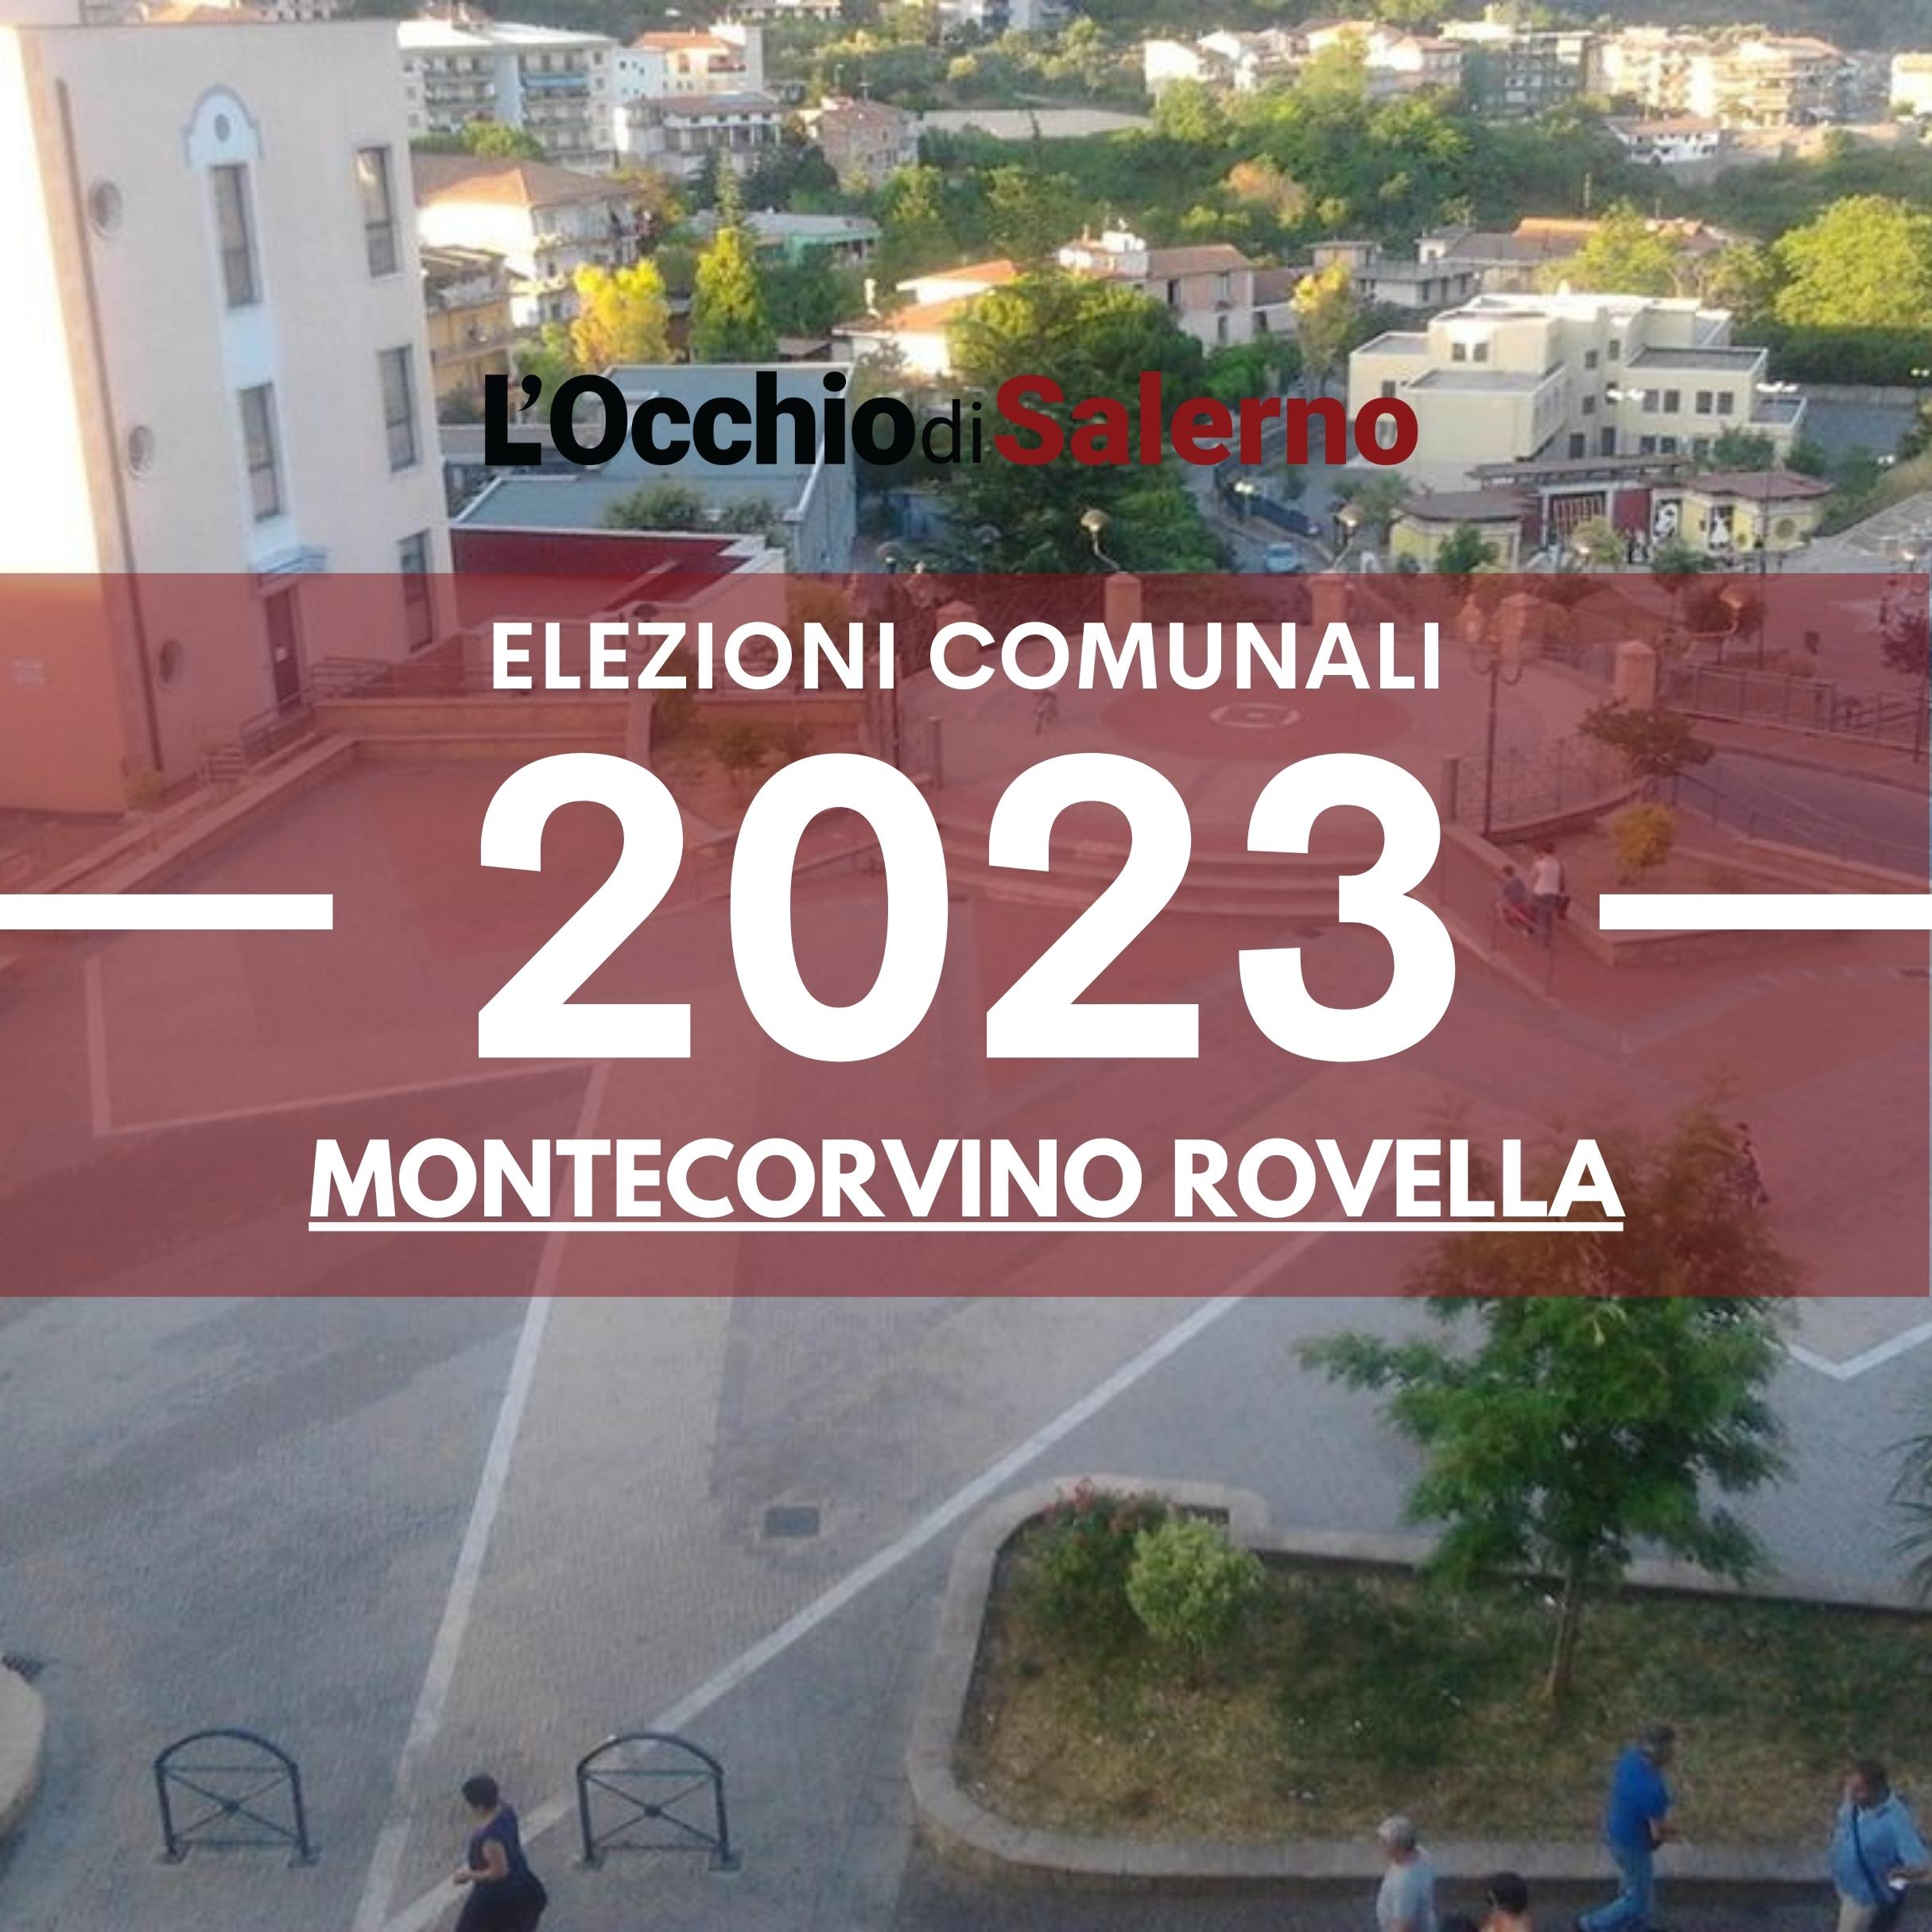 Elezioni comunali 2023 Montecorvino Rovella liste candidati